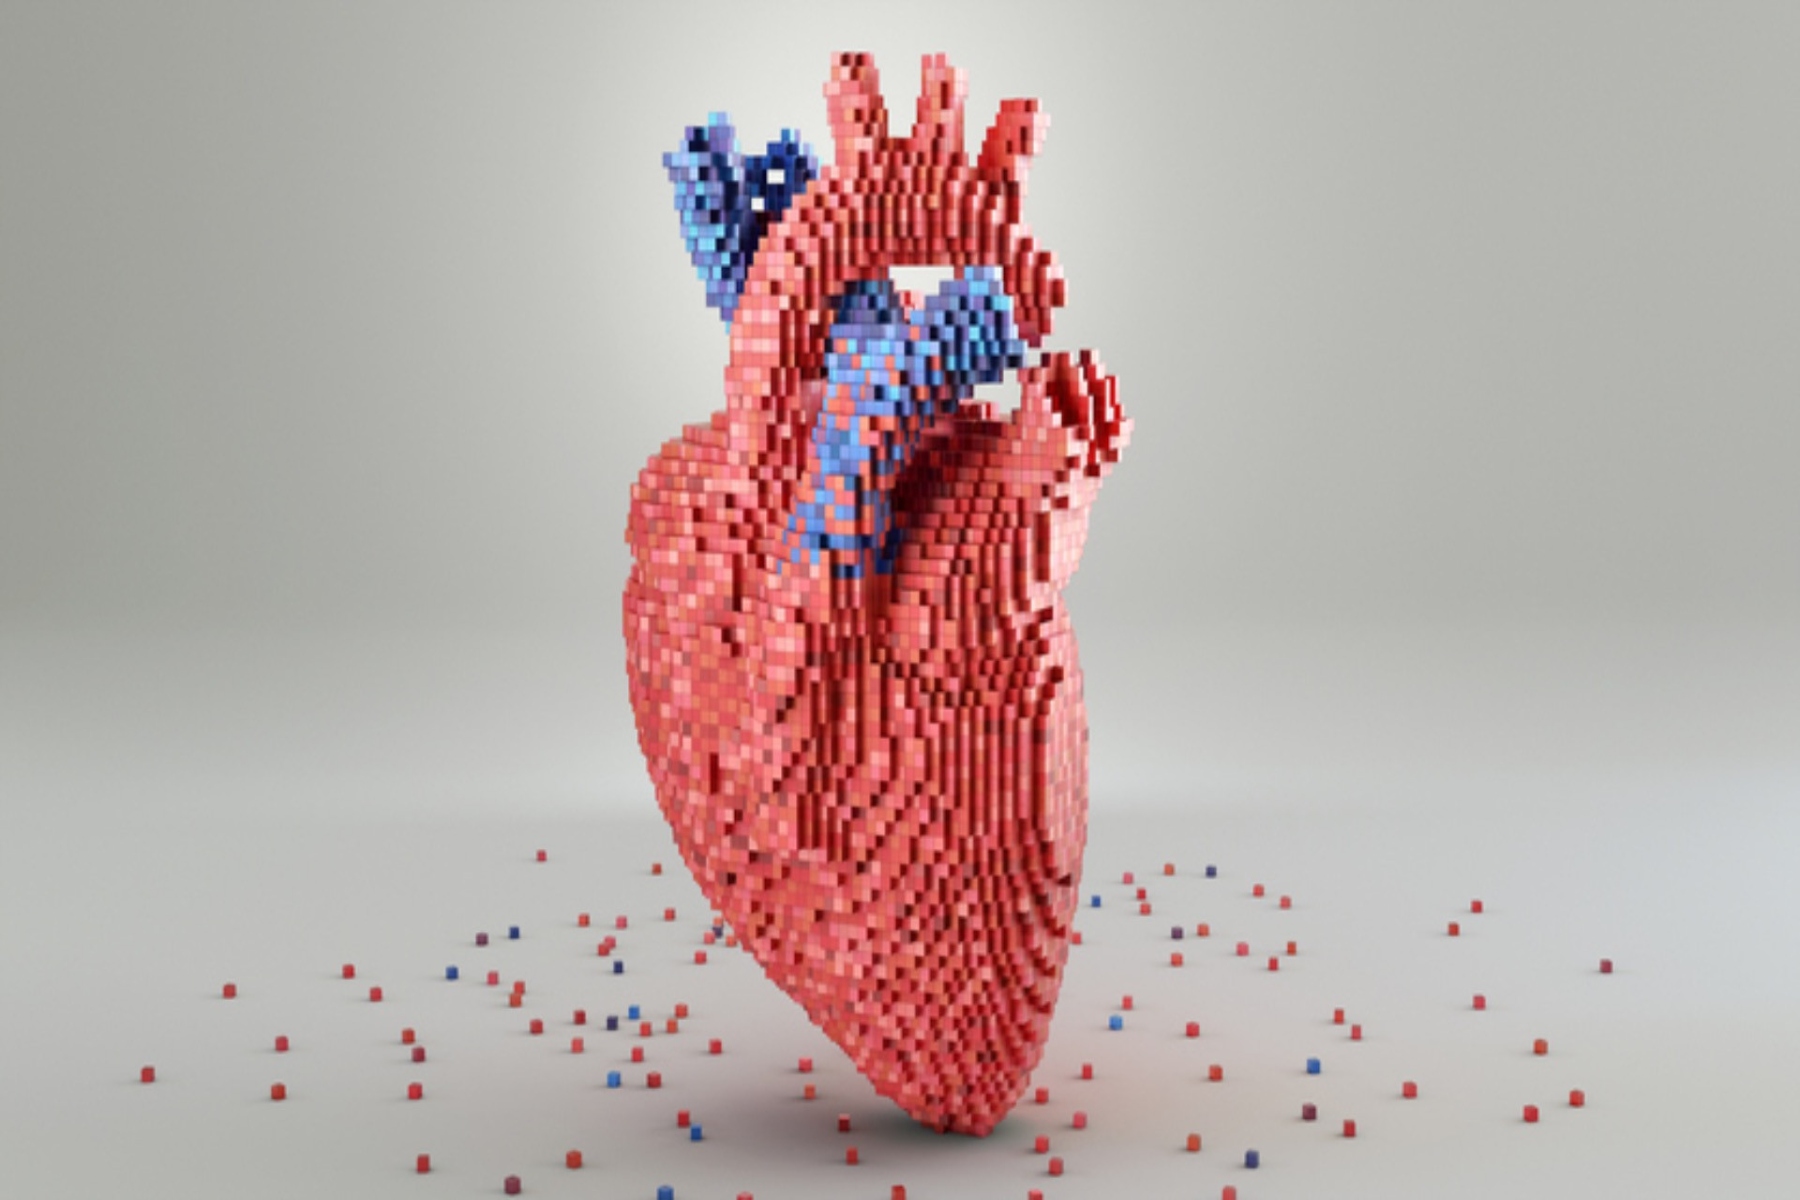 Καρδιά μικροπλαστικά: Οι χειρουργοί βρίσκουν μικροπλαστικά σε ανθρώπινες καρδιές